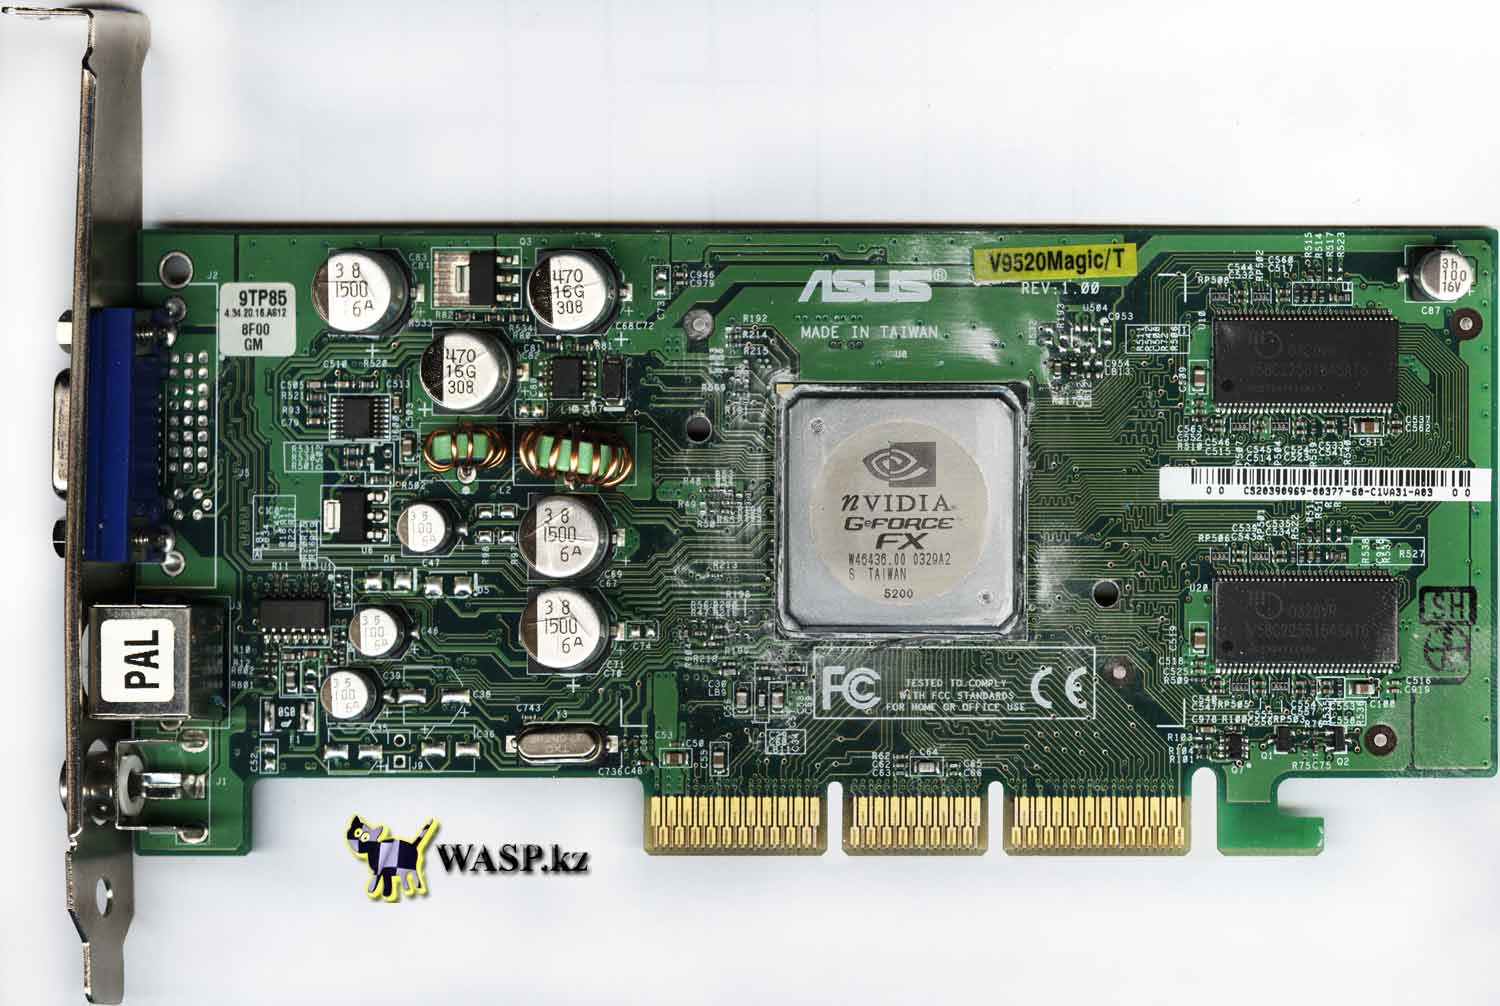 ASUS V9520 Magic/T или GeForce FX 5200 видеокарта